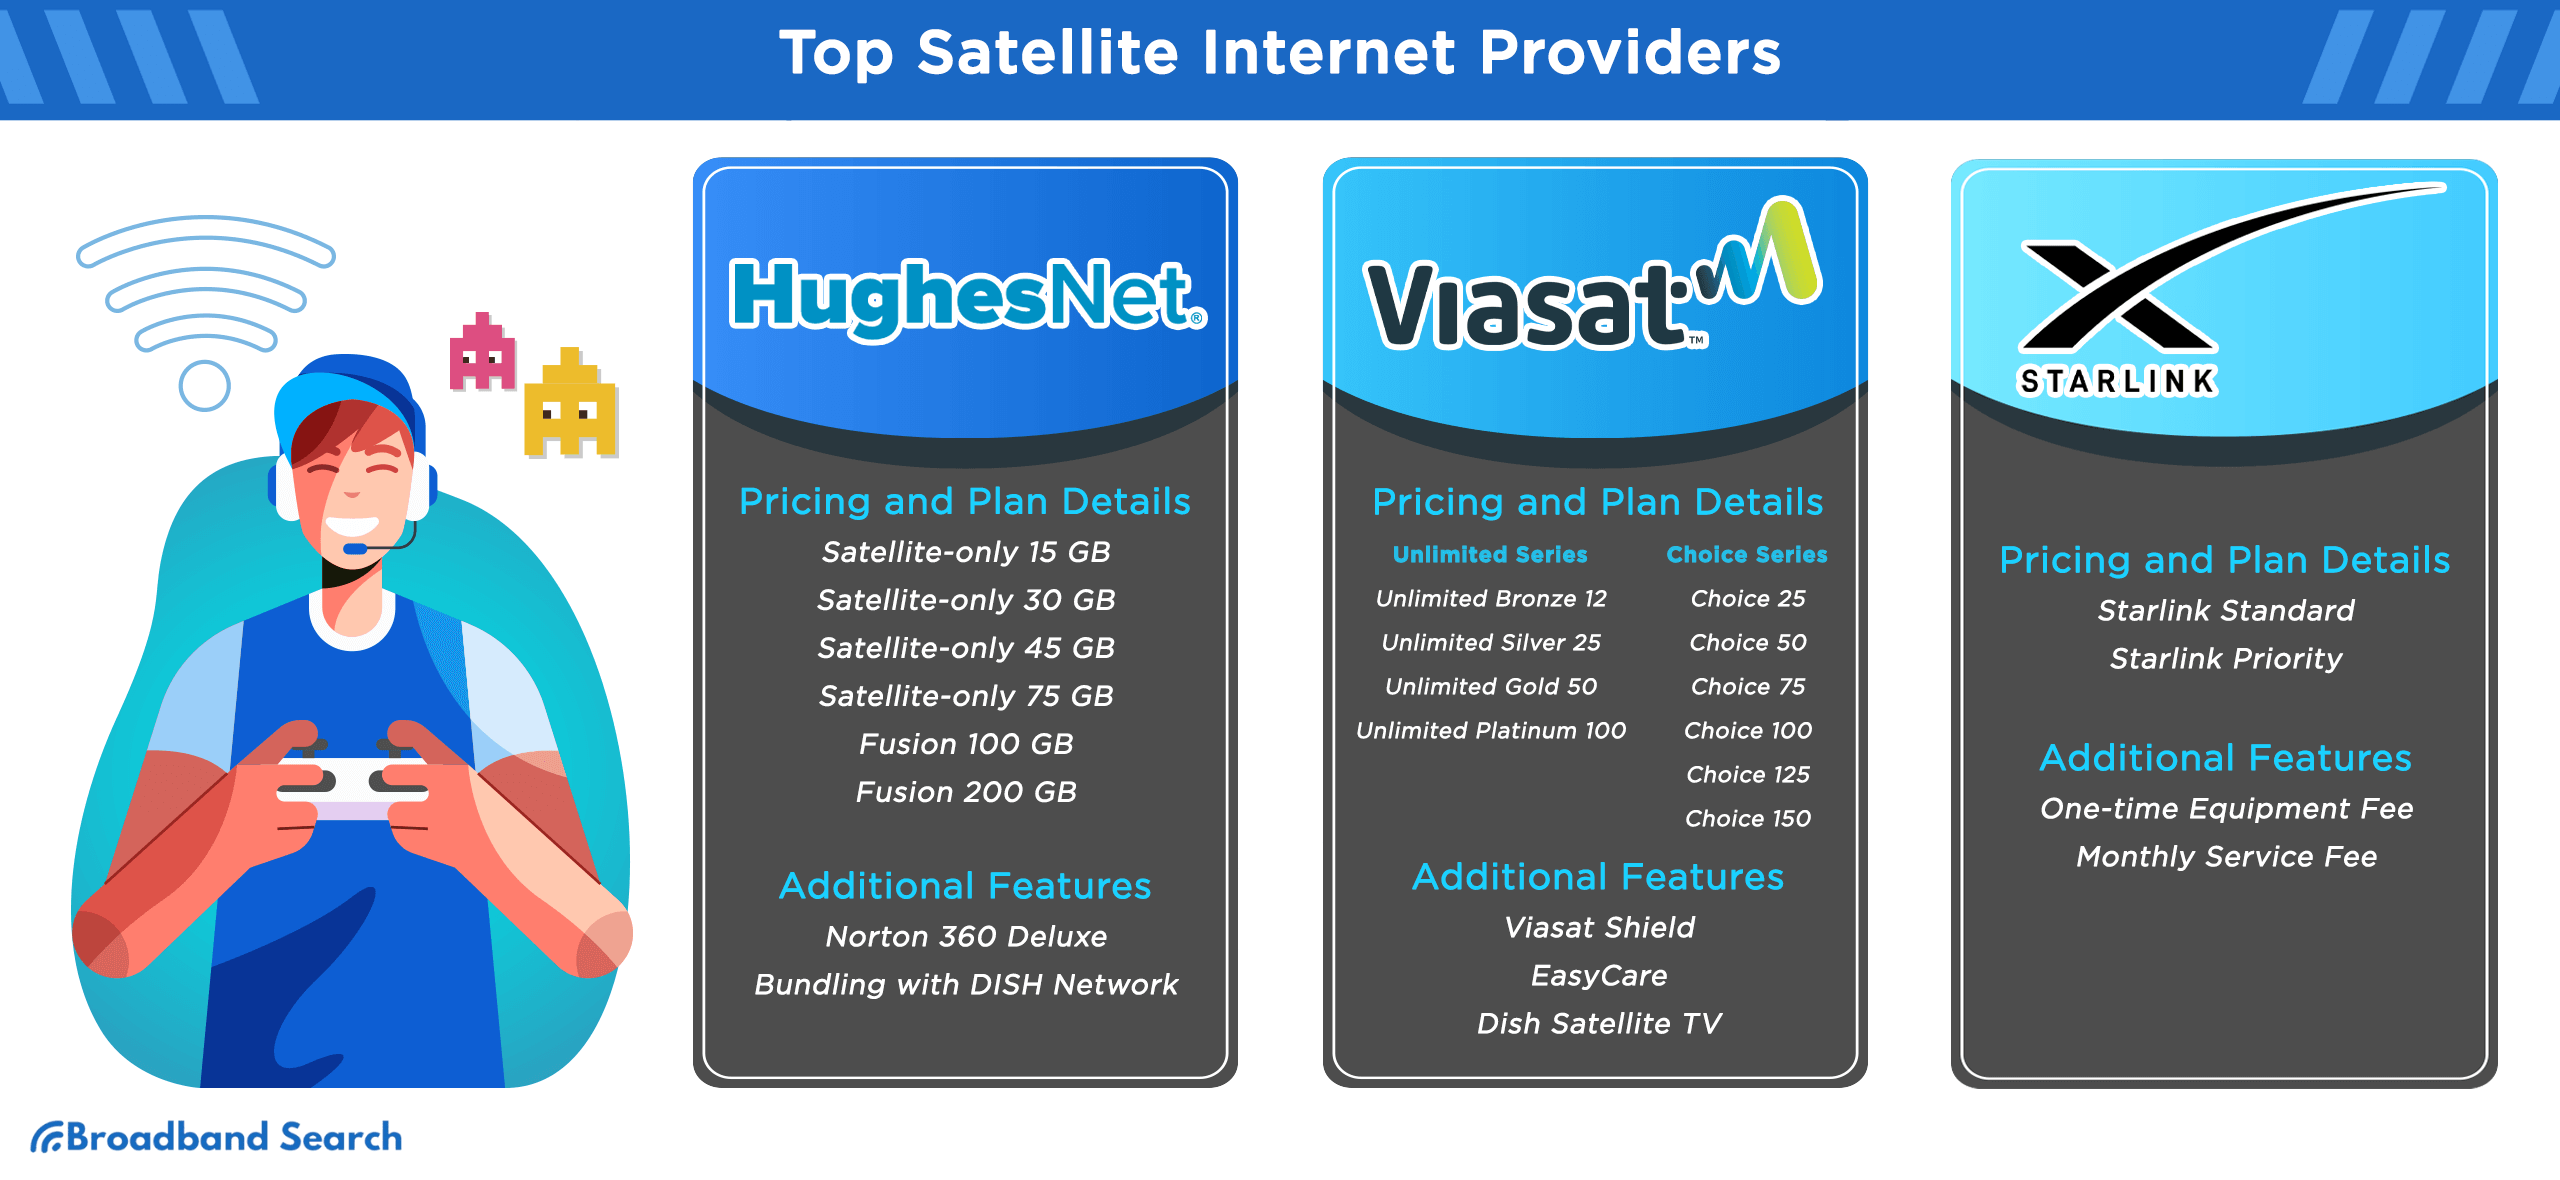 Comparison of the top satellite internet providers